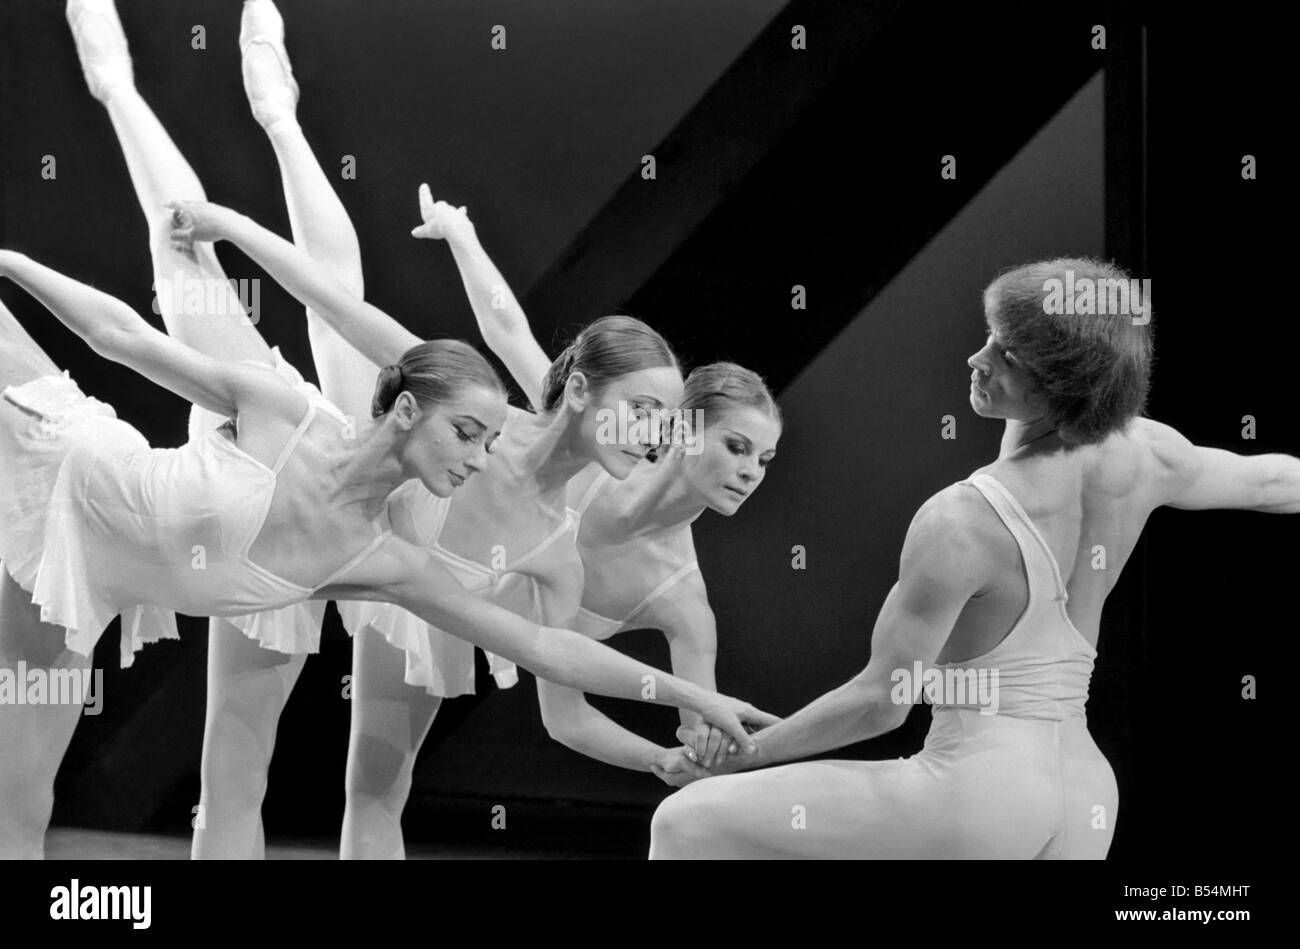 La danse de divertissement. Le Dutch National Ballet fait son London dabut au Sadlers Wells Theatre dans une saison d'une semaine. L'artiste invité est Rudolph Nureyev qui danse à l'ouverture de la performance 'ballets Apollon Musagete' et 'Monument pour un garçon mort'. Nureyev à répéter avec trois des danseurs des néerlandais (d'avant en arrière) Helene Pex, Sonja Marchiolly, et Olga De Hass (droite). Décembre 1969 Z11506-003 Banque D'Images